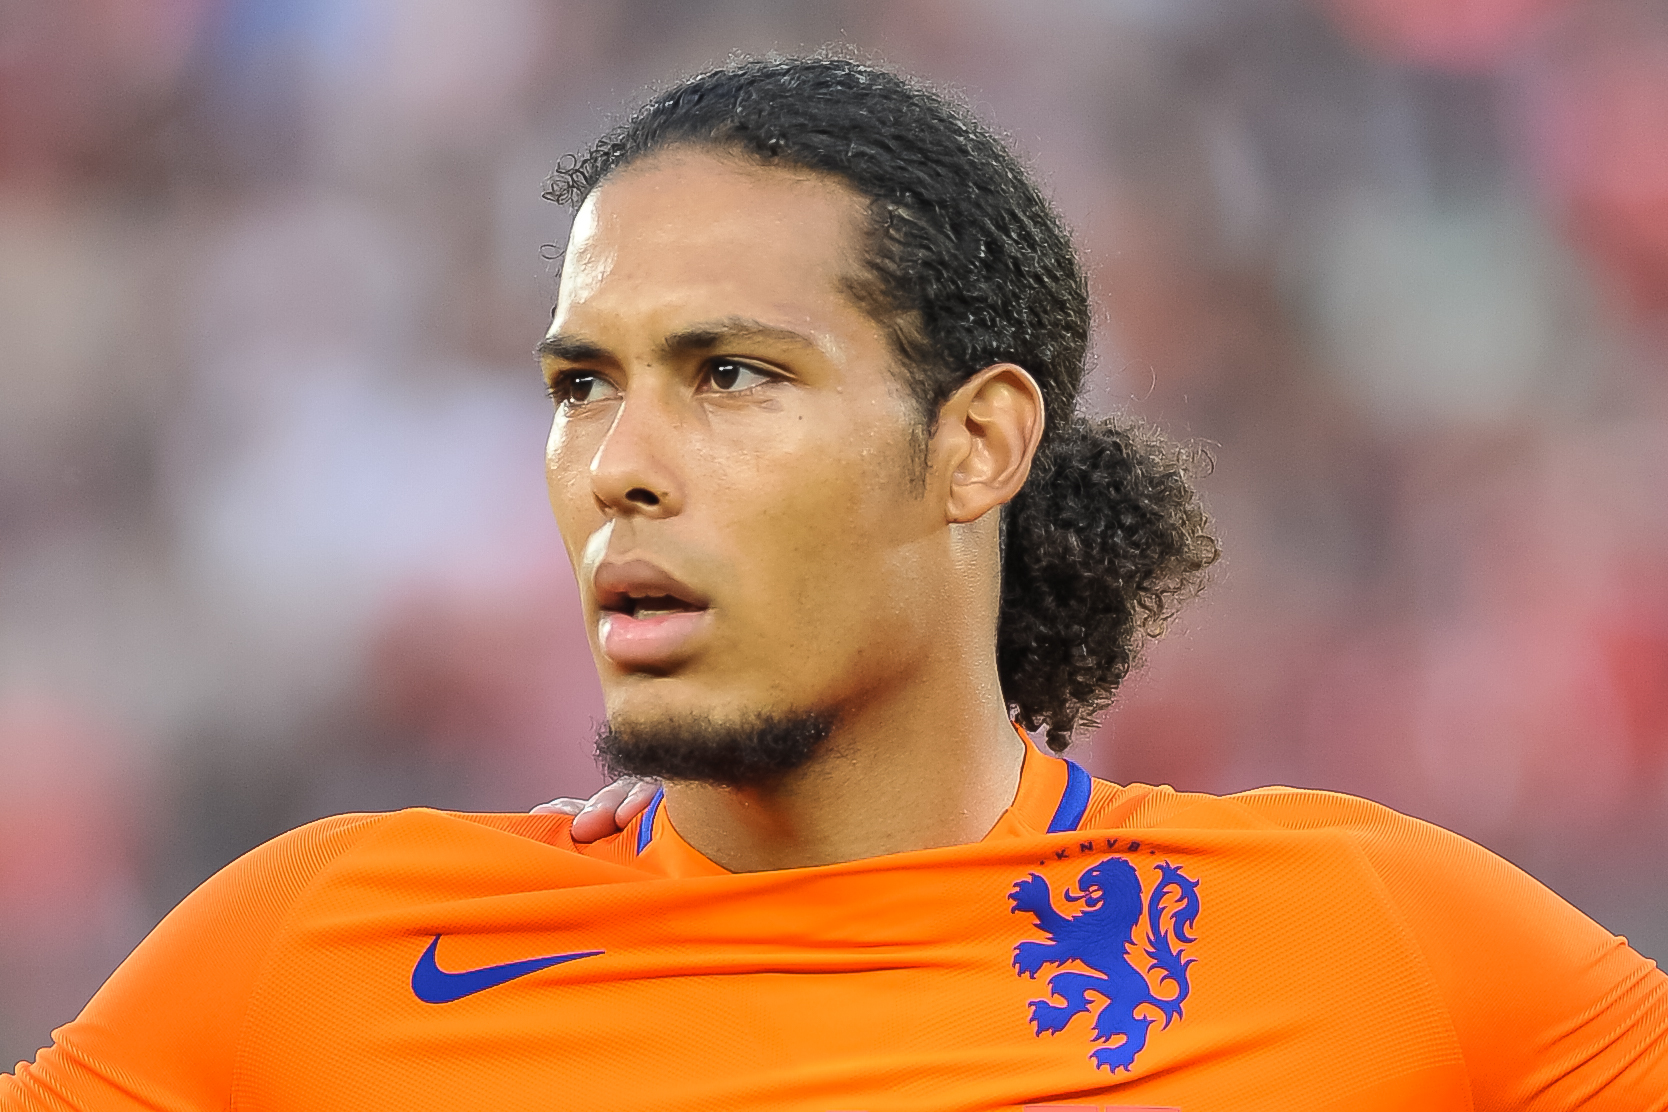 bleek Vorming Collega Van Dijk returns to Oranje squad after injury for World Cup qualifiers -  DutchNews.nl